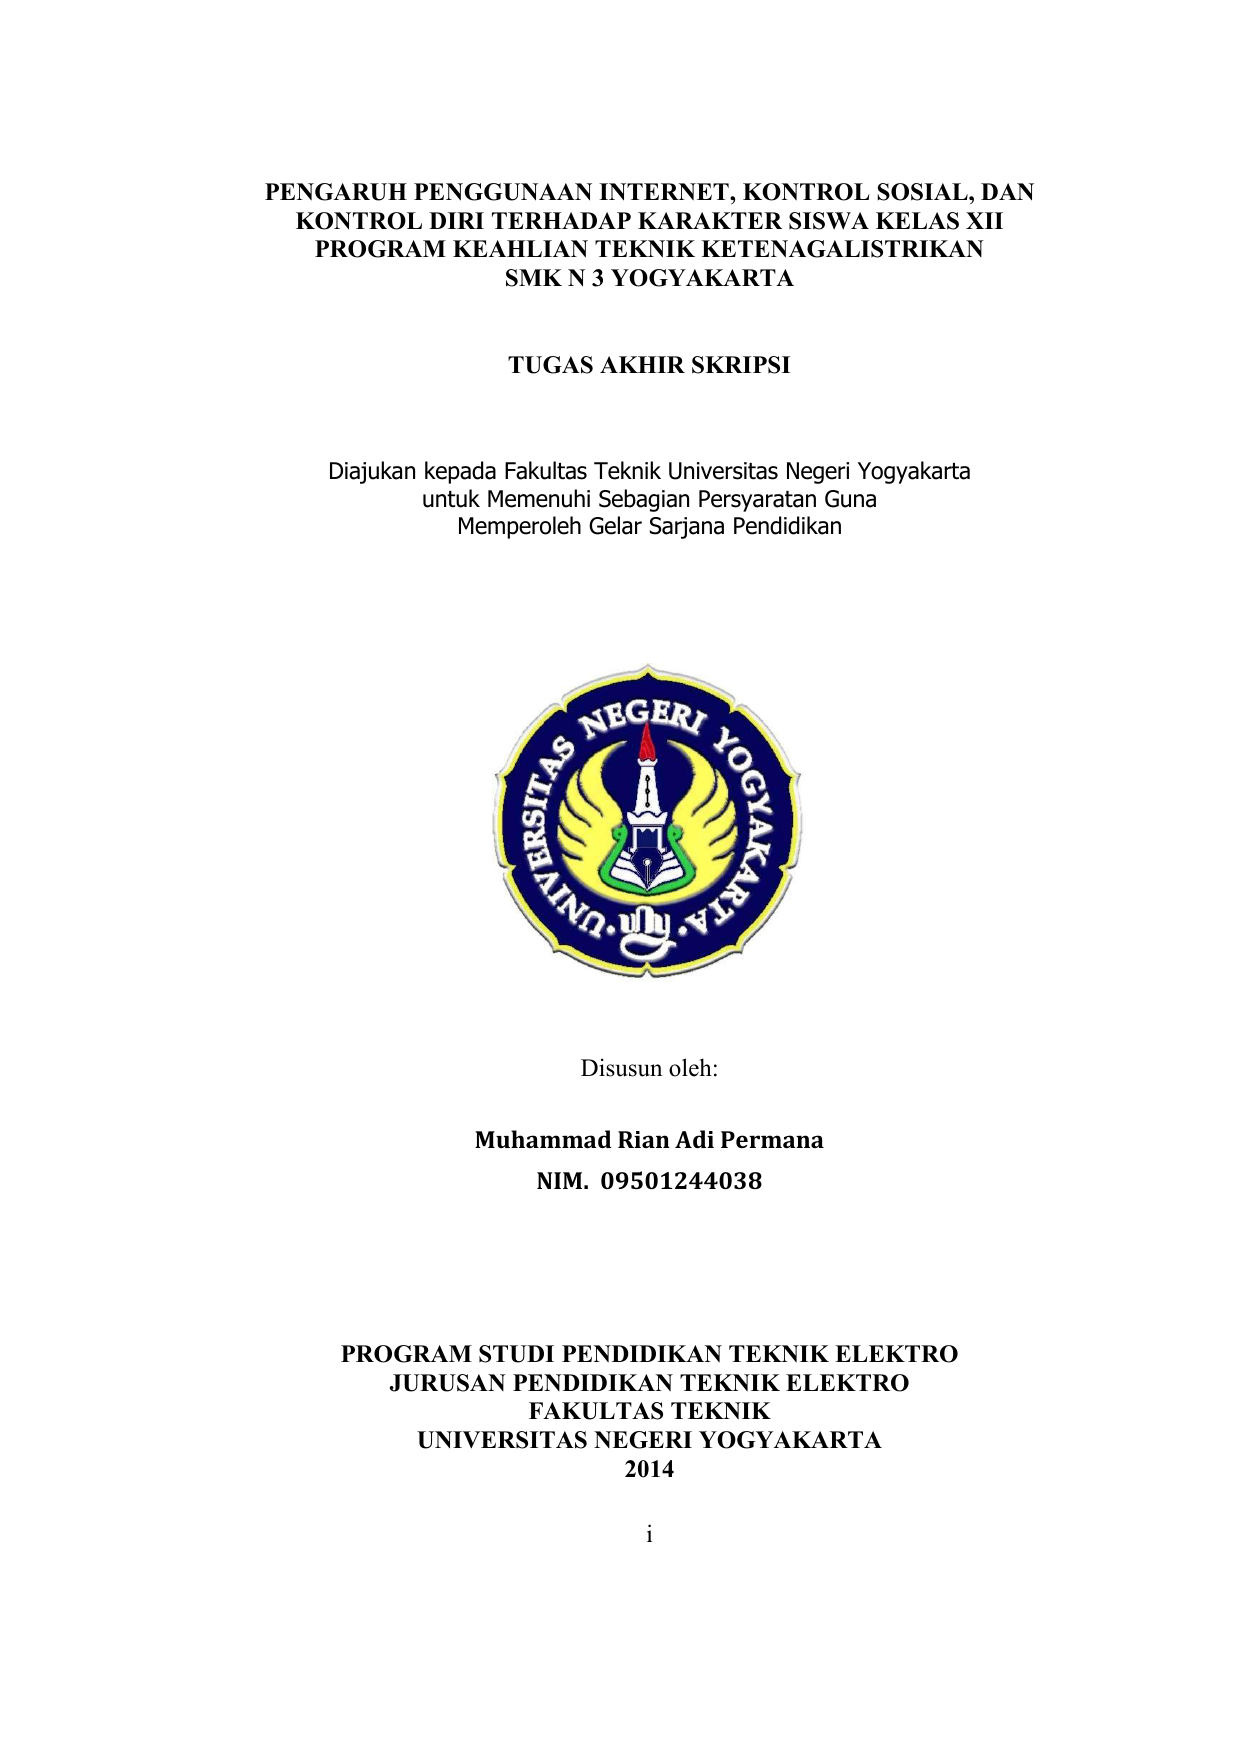 KELAS XII PROGRAM KEAHLIAN TEKNIK KETENAGALISTRIKAN SMK N 3 YOGYAKARTA TUGAS AKHIR SKRIPSI Diajukan kepada Fakultas Teknik Universitas Negeri Yogyakarta